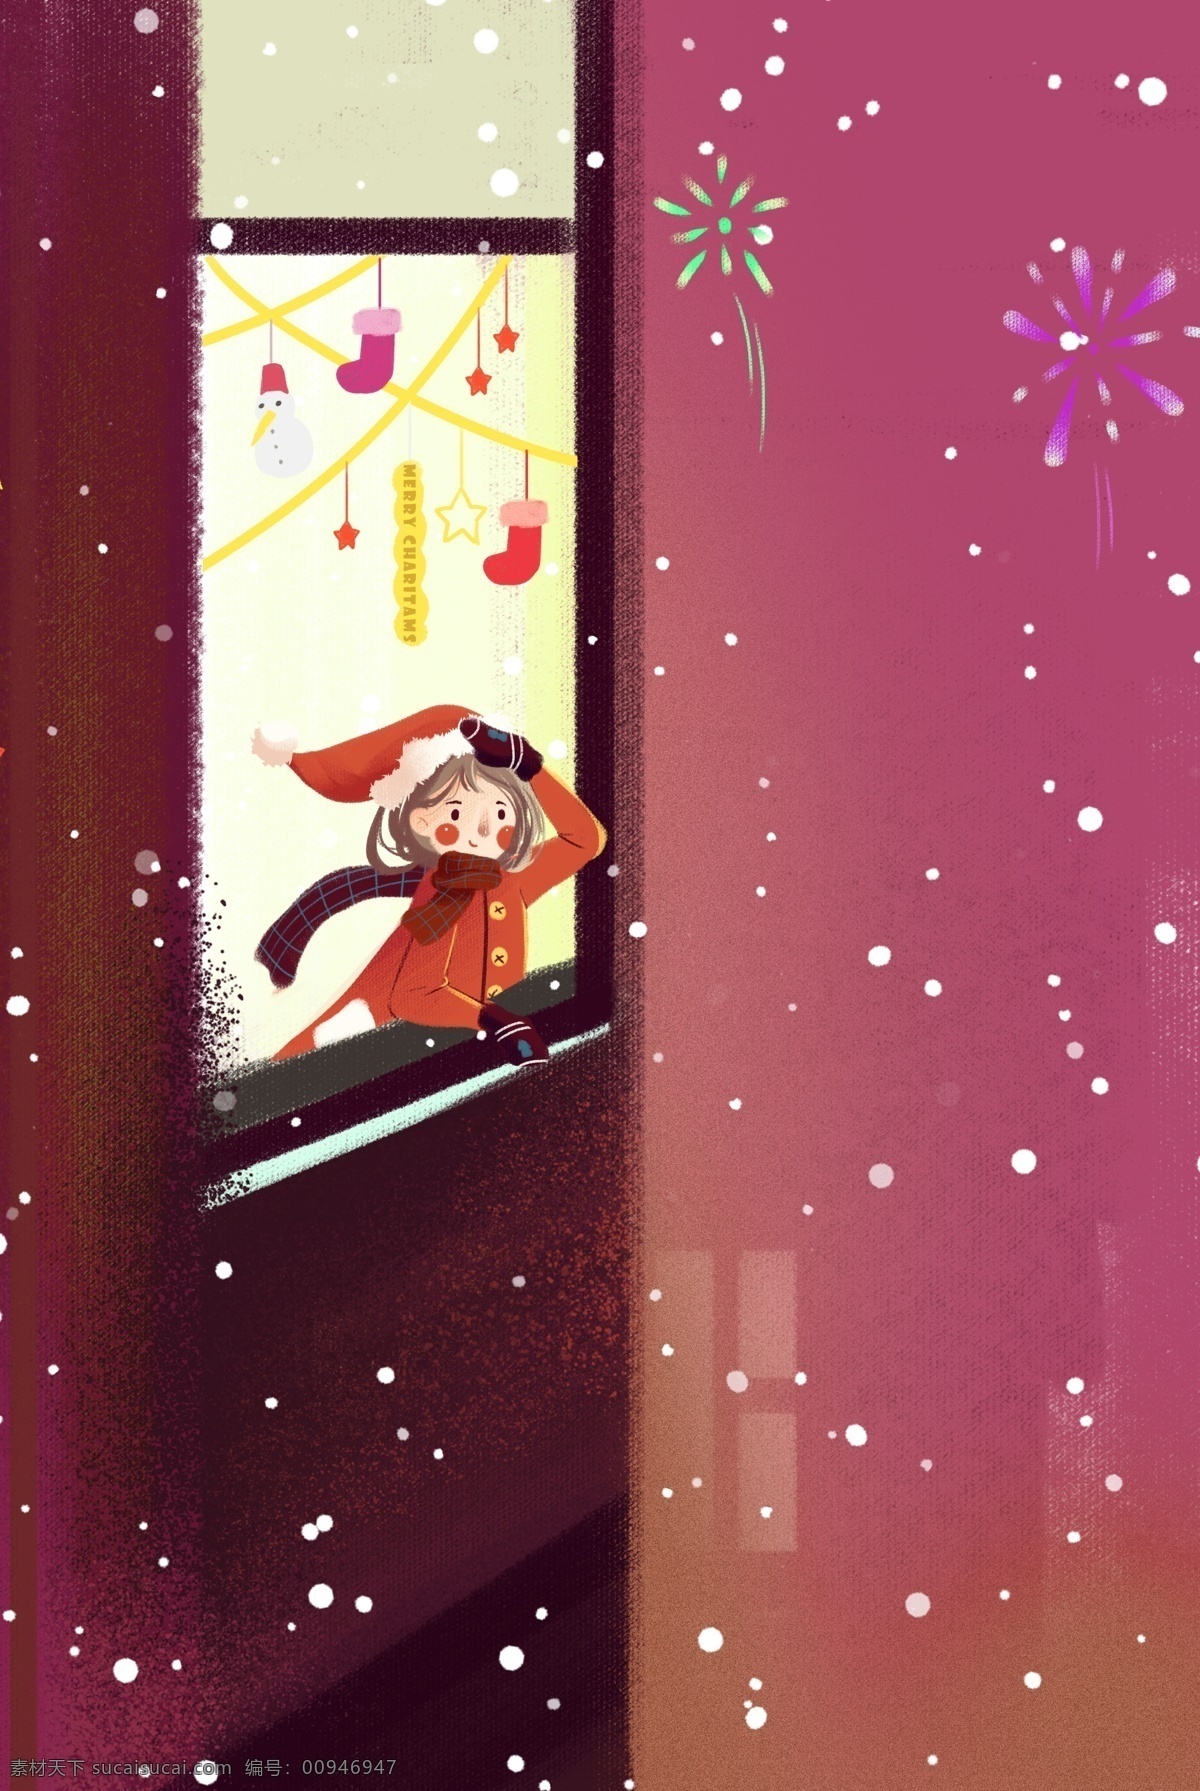 家中 窗 看 烟花 圣诞 女孩 圣诞节 圣诞女孩 家居 窗边 热闹 插画风 促销海报